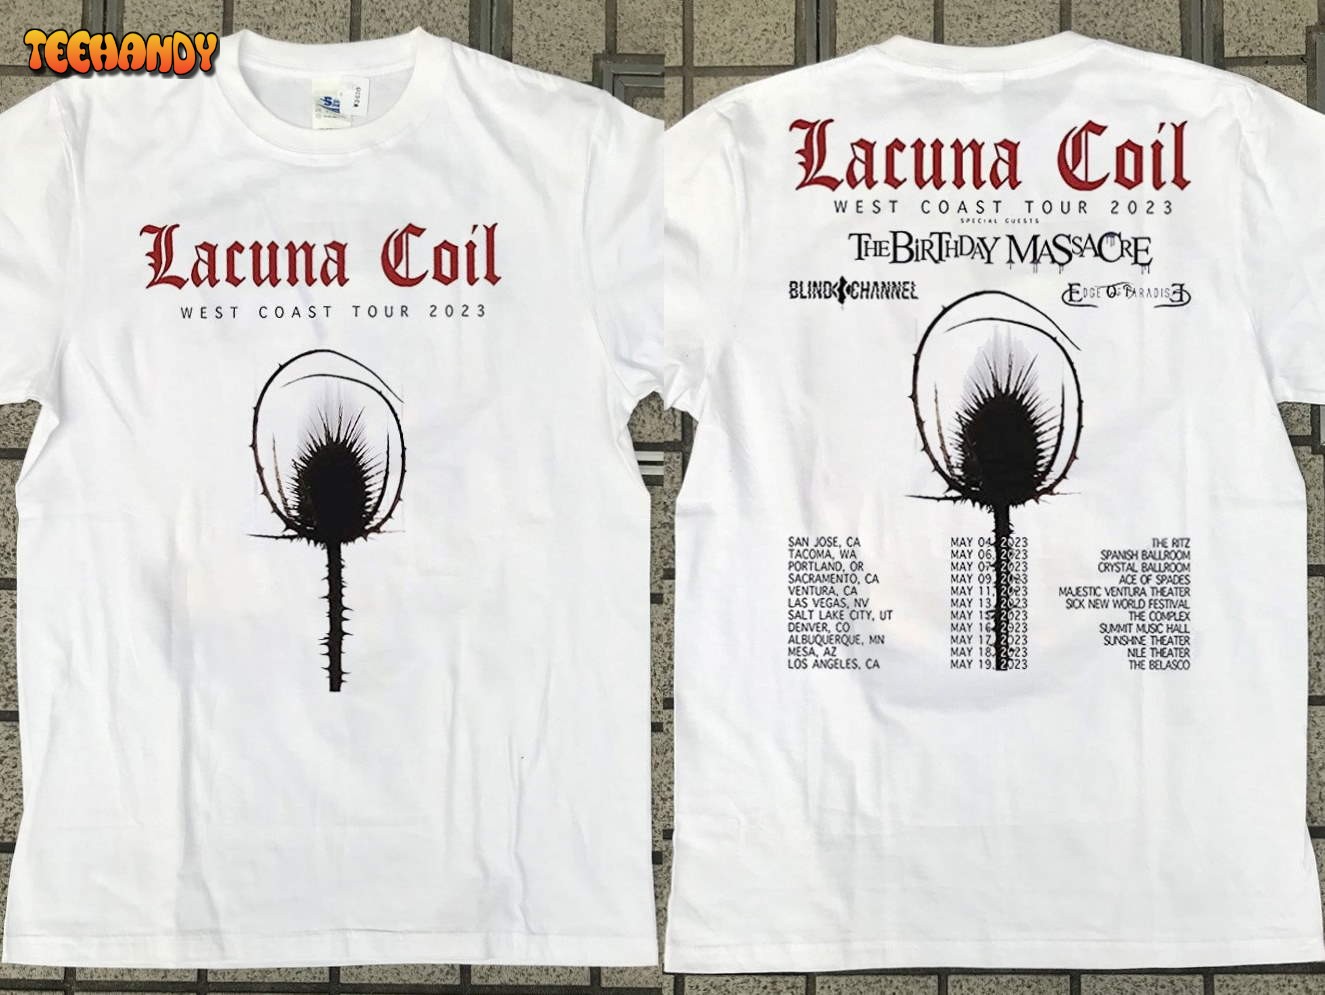 2023 Lacuna Coil Shirt West Coast Tour T-Shirt